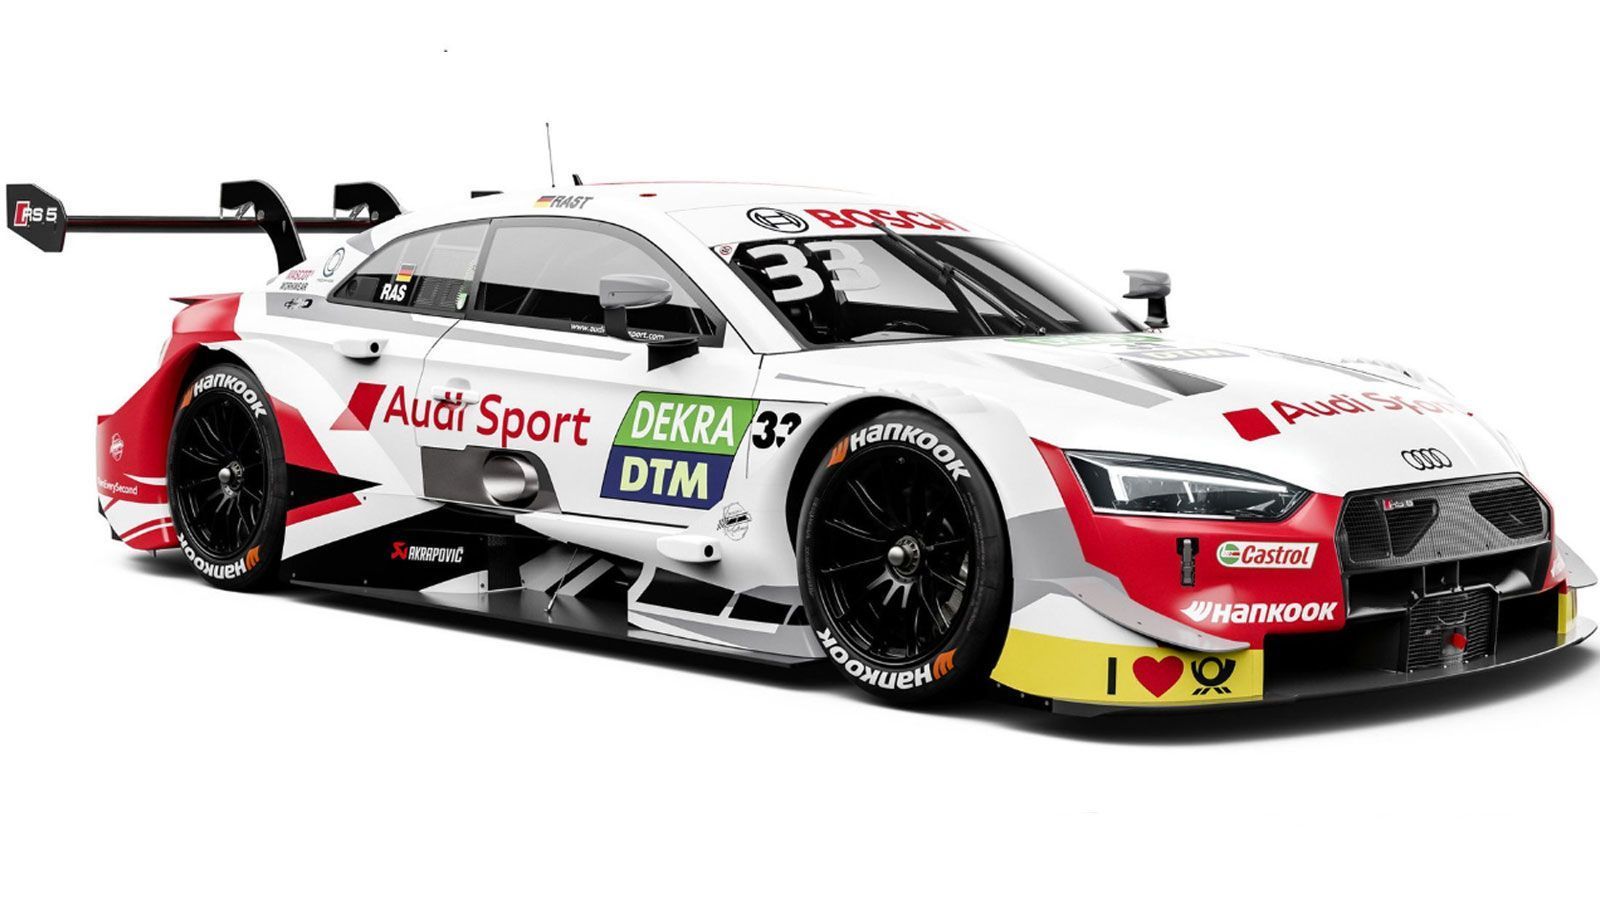 
                <strong>Rene Rast (Audi)</strong><br>
                Der Meister von 2017 startet diese Saison in einem vorwiegend weißen Rennwagen. "Mein klares Ziel ist es, die Saison als Champion zu beenden", erklärt der 32-Jährige selbstbewusst. Unverändert trägt sein Auto auch 2019 die Nummer 33.
              